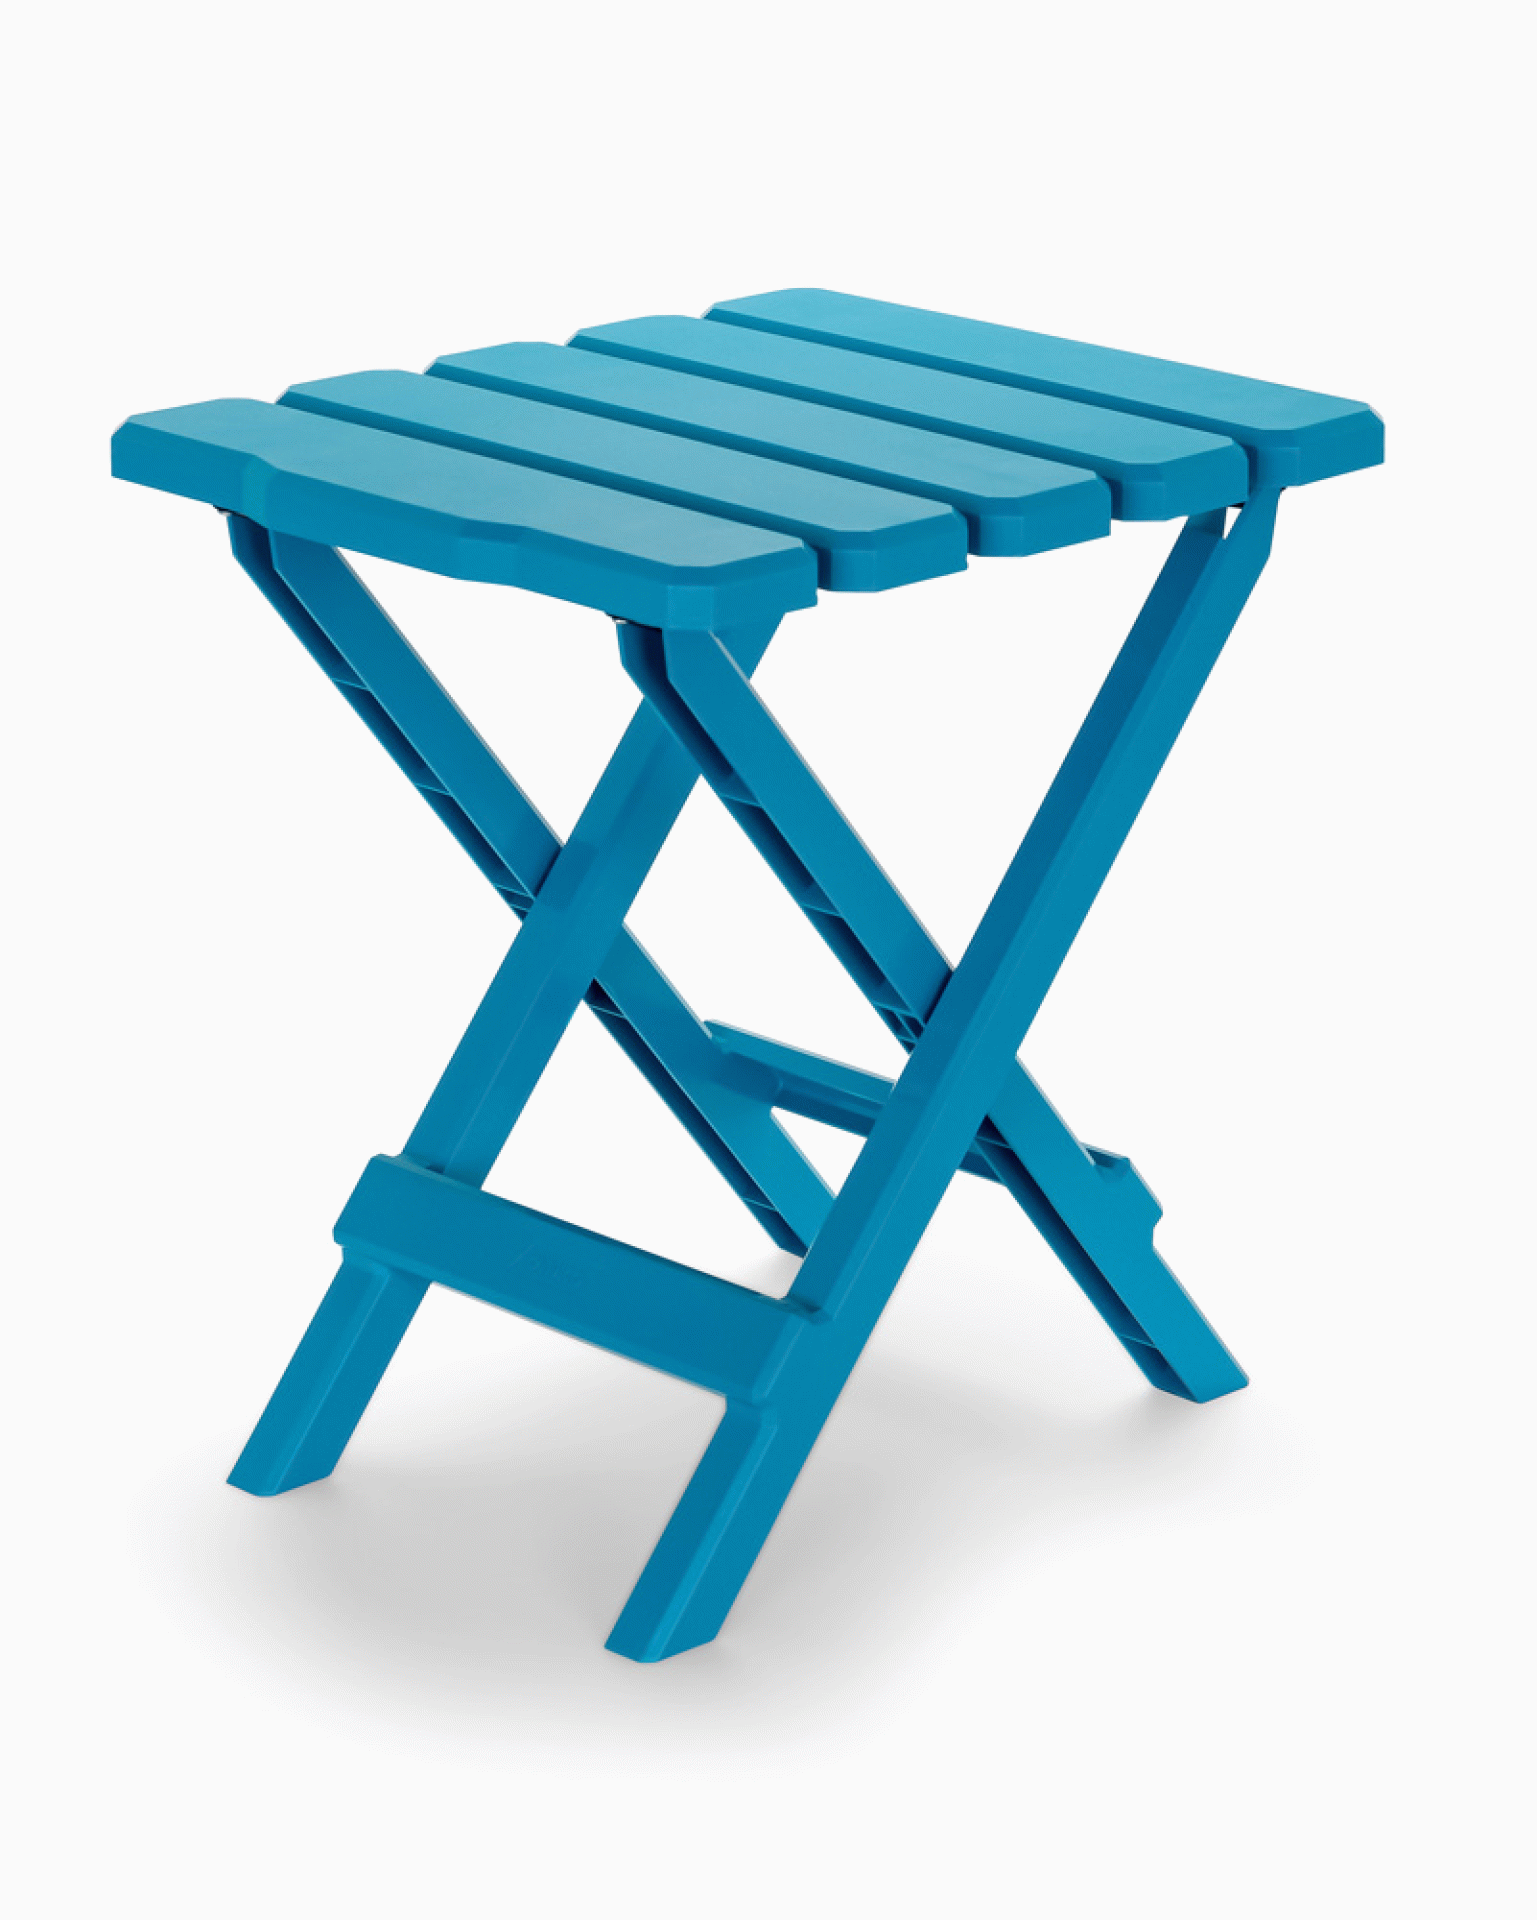 CAMCO MFG INC | 51680 | Small Adirondack Style Folding Table - Aqua